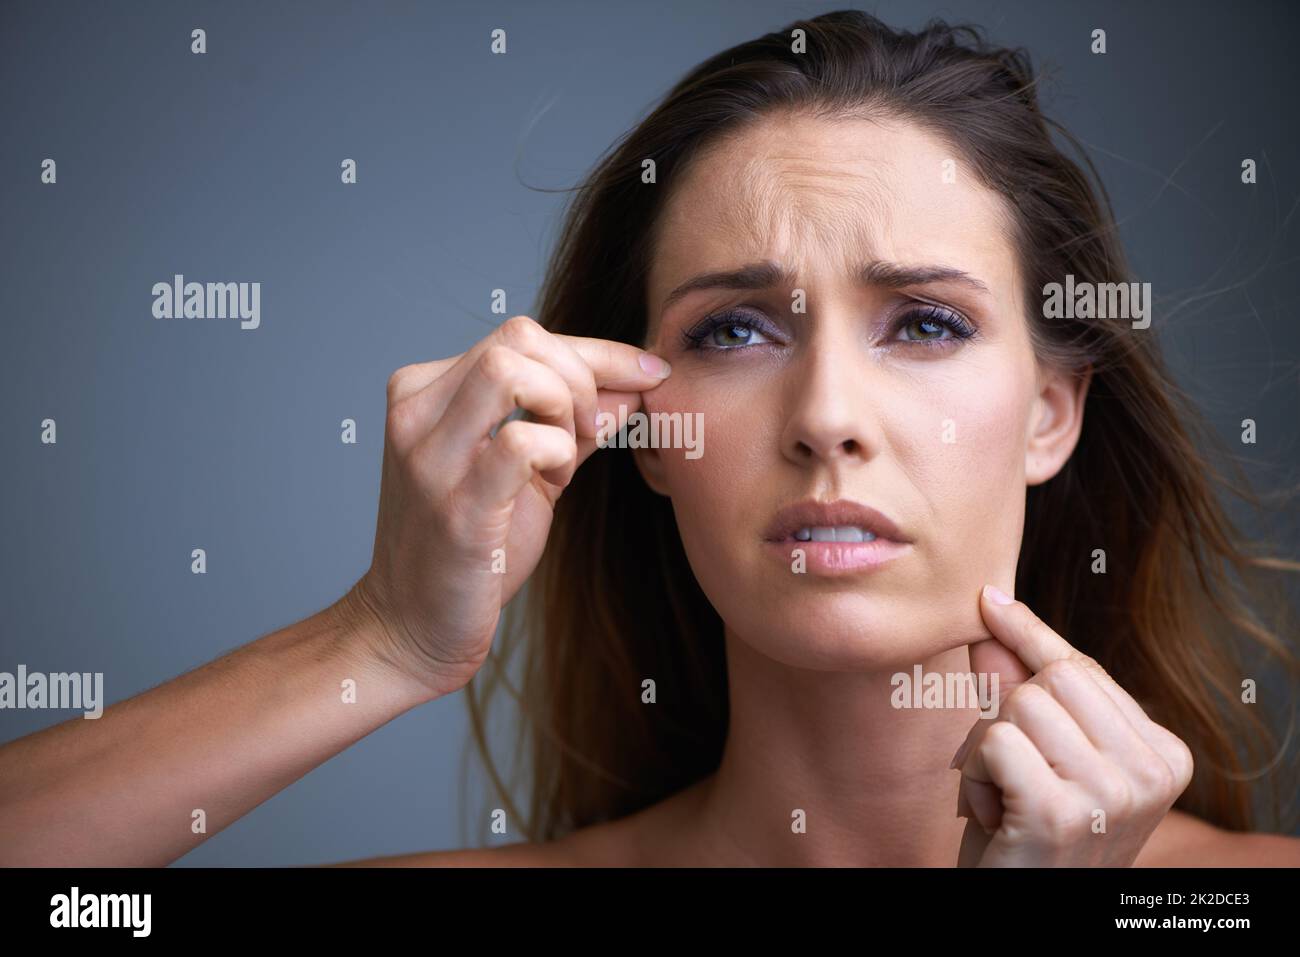 Questo trattamento cutaneo NON funziona. Una giovane donna attraente che osserva delusa mentre tira sulla sua pelle. Foto Stock